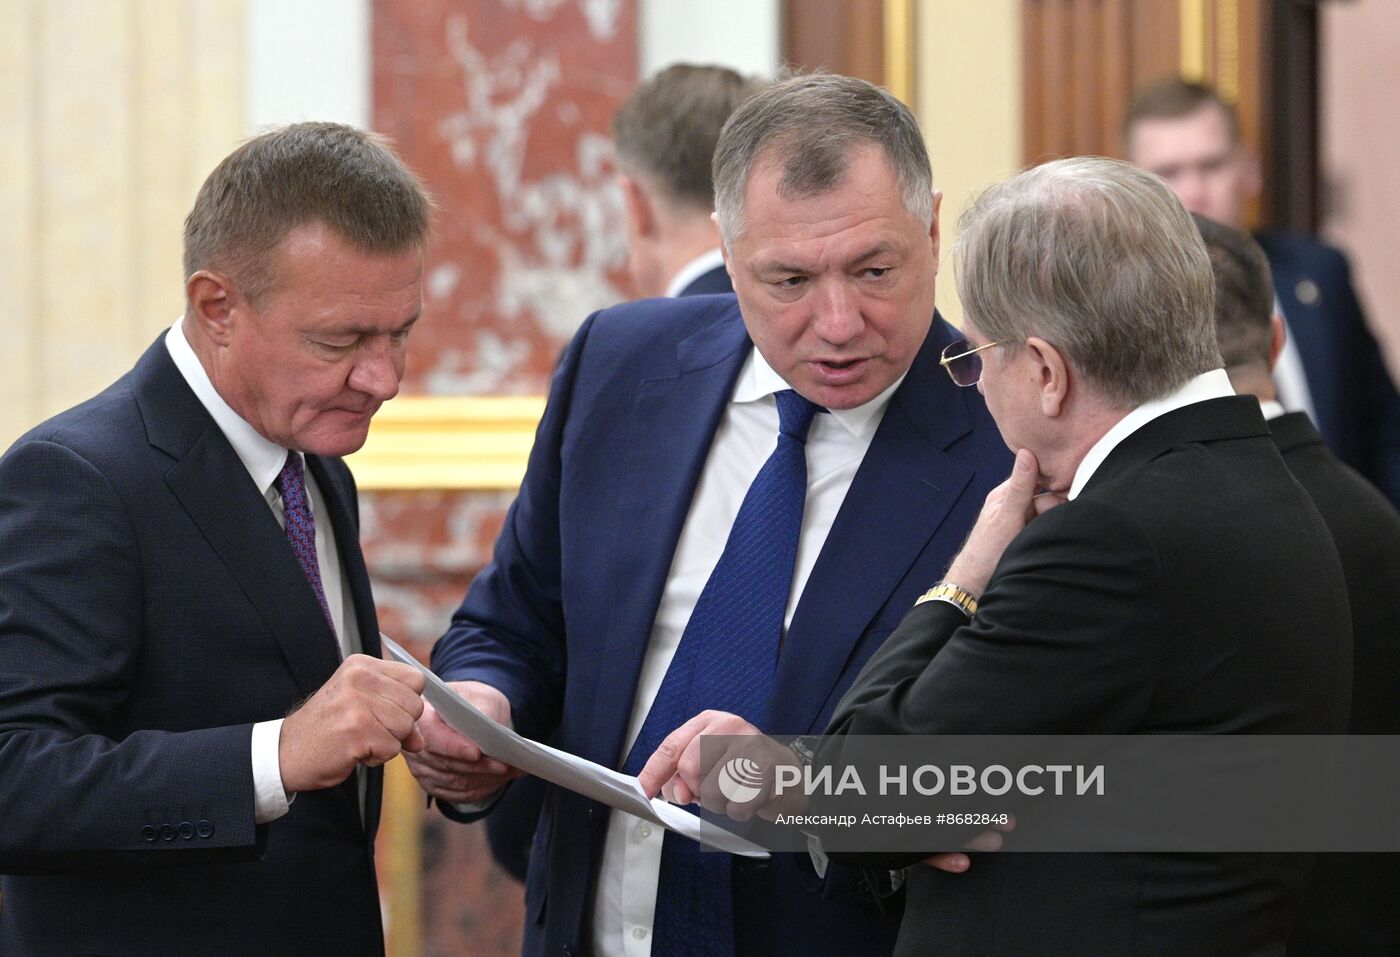 Первое заседание правительства РФ в новом составе